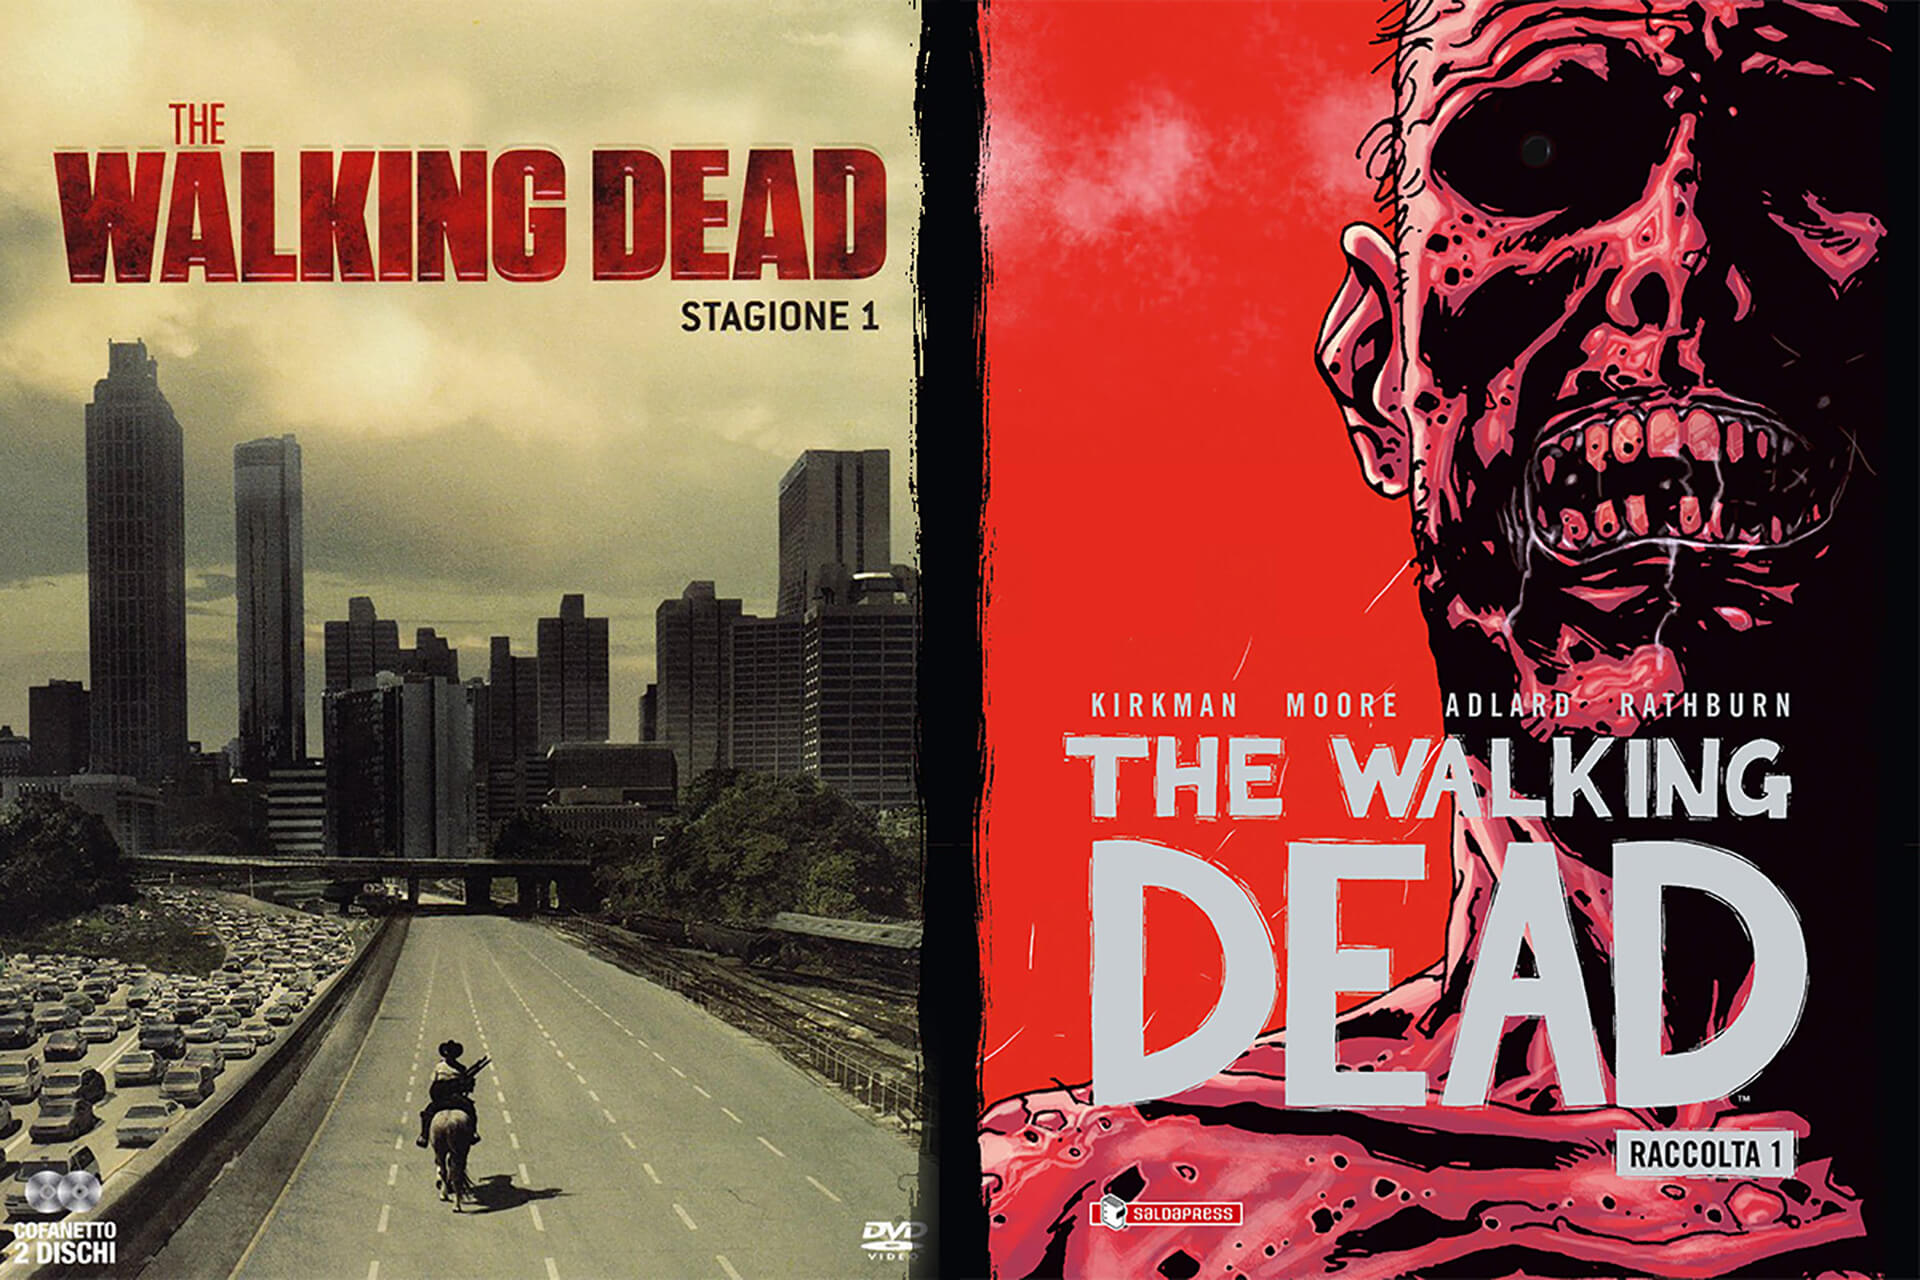 The Walking Dead: 3 differenze tra fumetti e serie tv